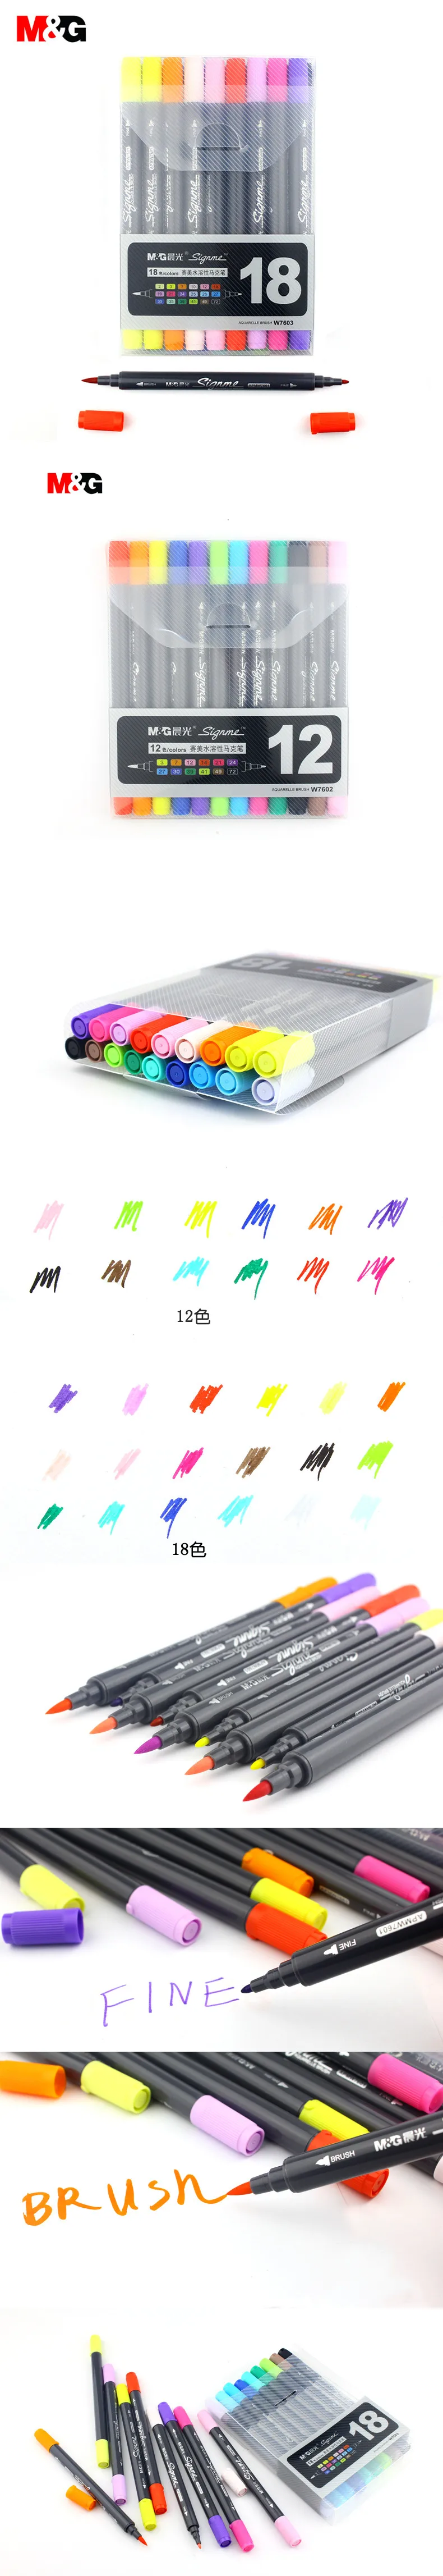 M& G две головки акварельные кисти Маркеры Набор для рисования цветные манга эскизы подарок маркер ручка для школы ребенок искусство Дизайн suppies